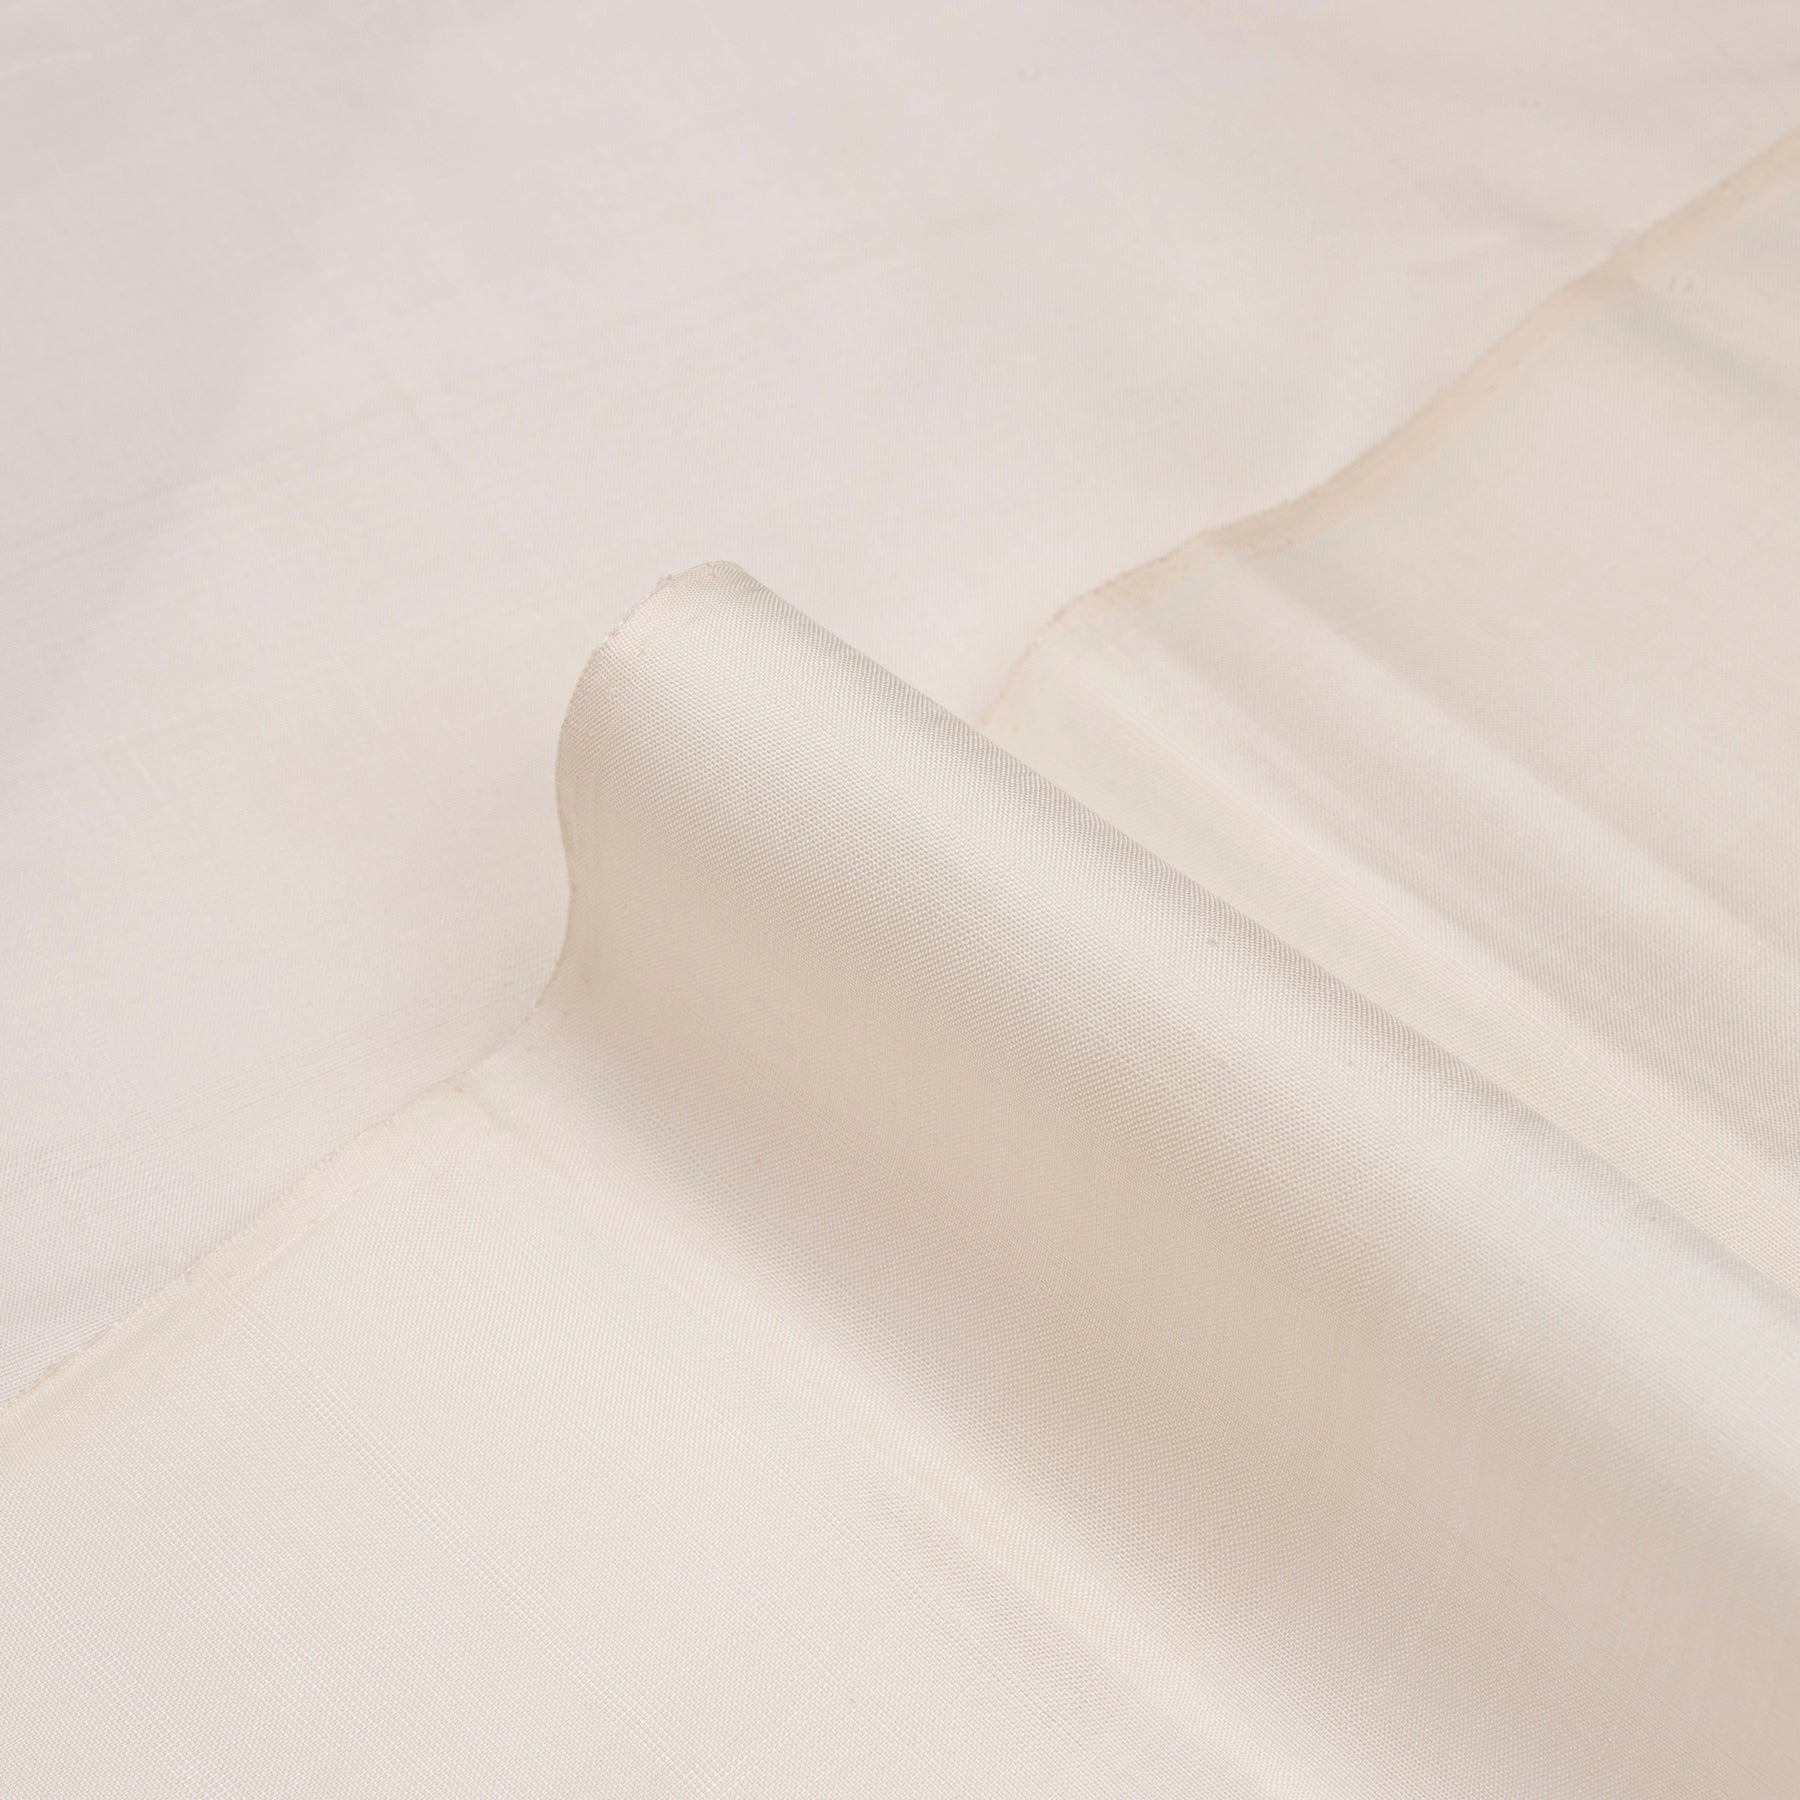 Kanakavalli Kanjivaram Silk Fabric Length 22-110-HF001-10369 - Profile View